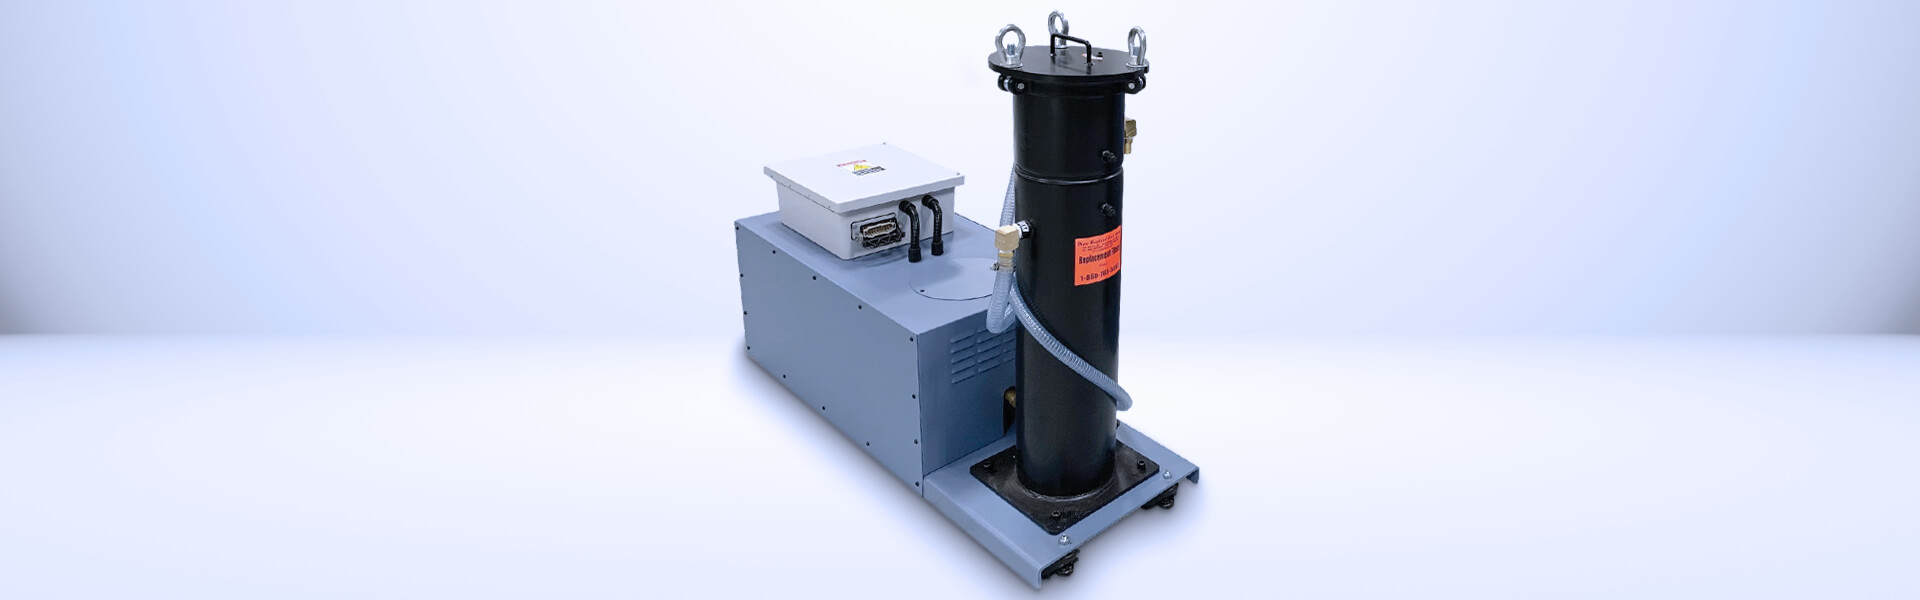 High pressure pump EU-1000-1